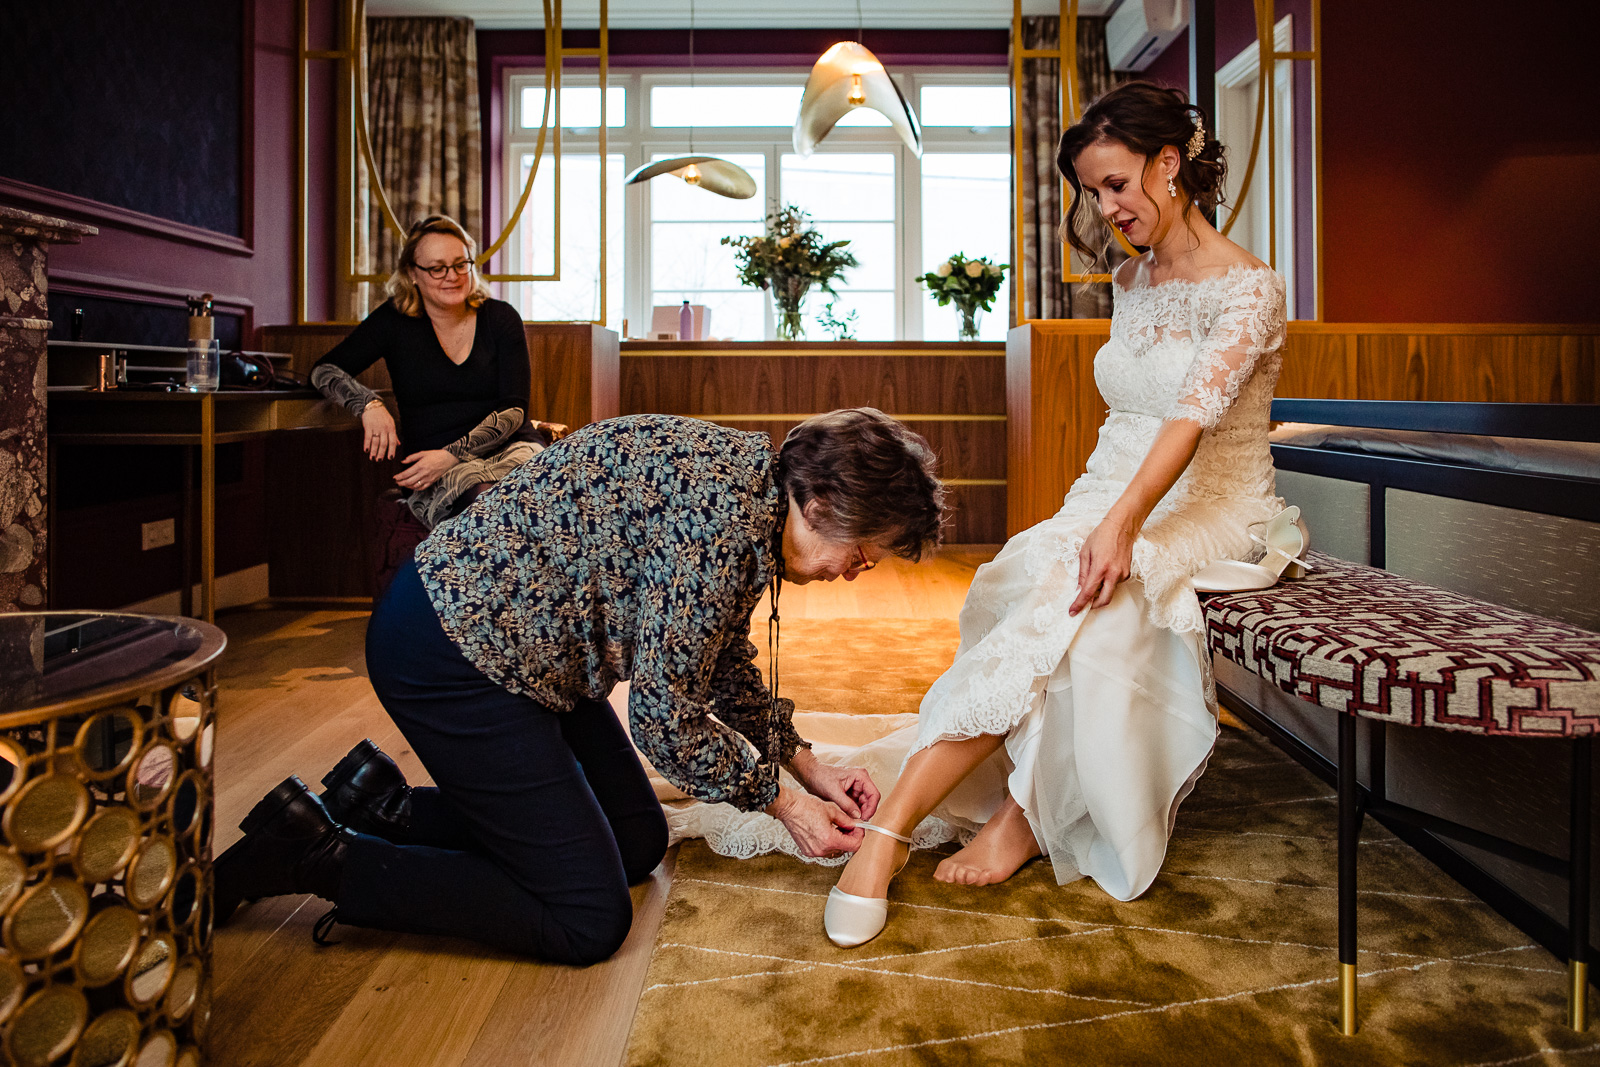 Trouwfotograaf Leiden moeder helpt bruid met trouwschoenen aandoen